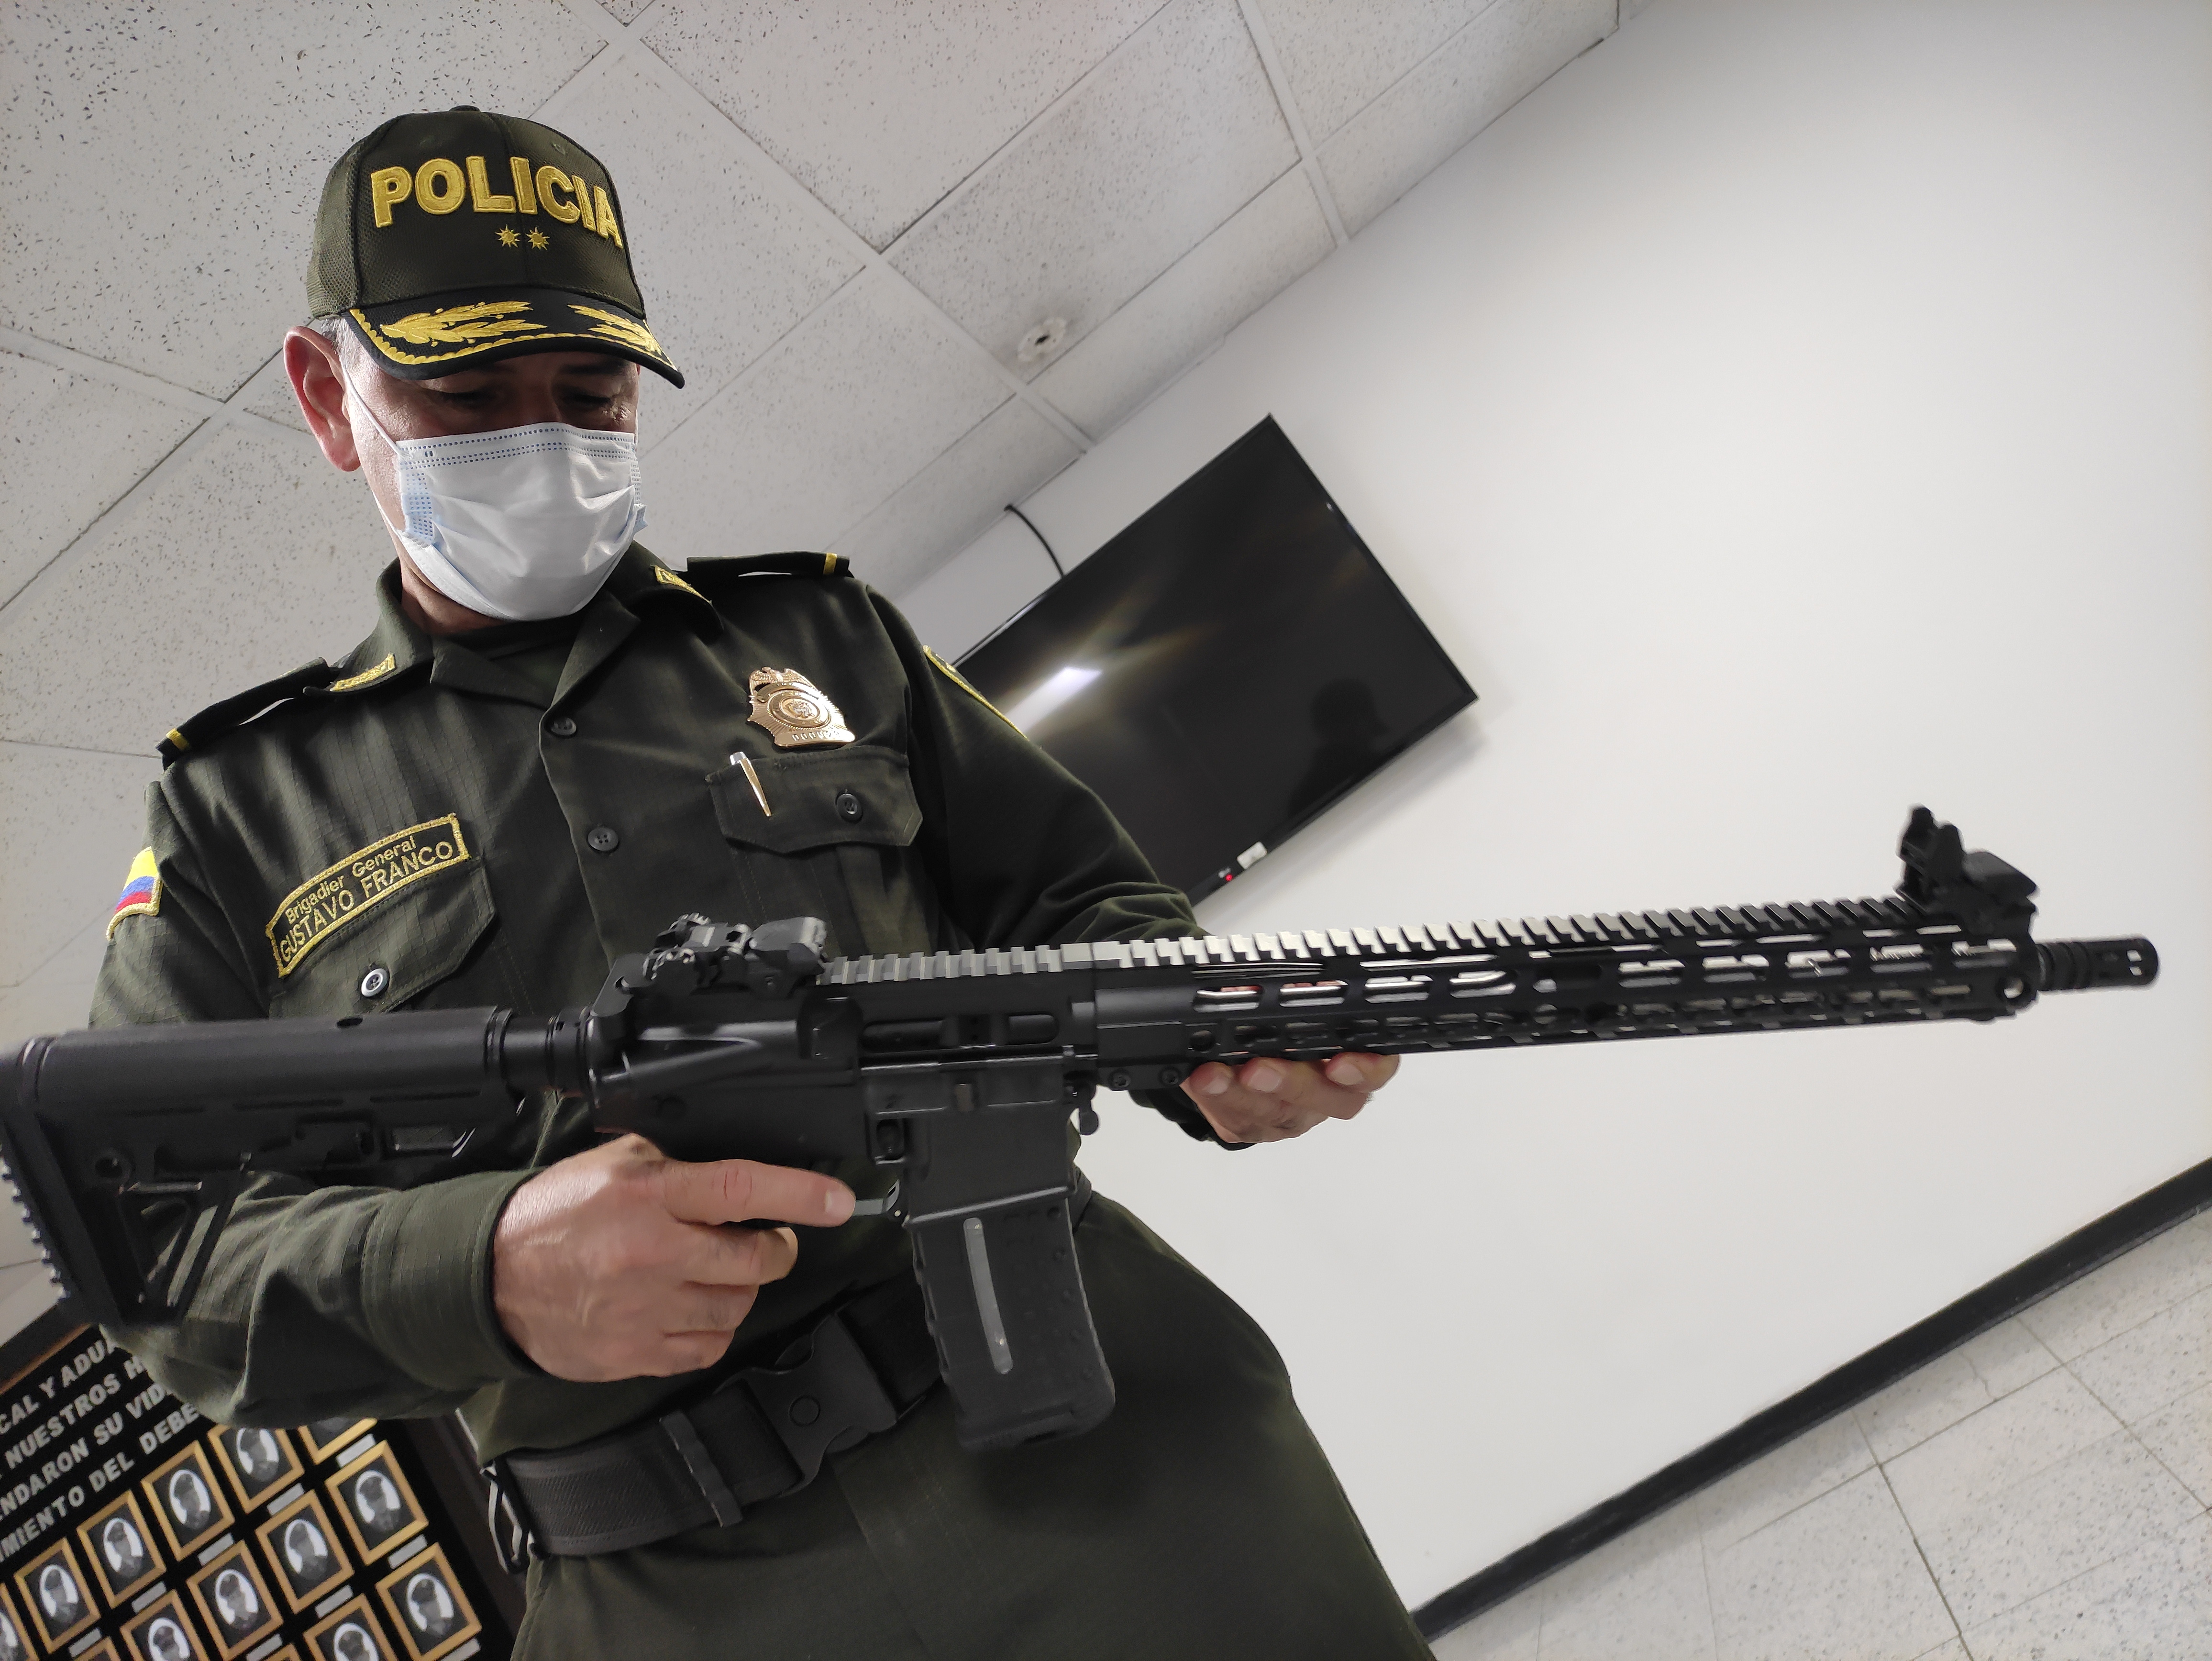 Fusiles incautados en Colombia tenían como destino las redes del ELN en Venezuela